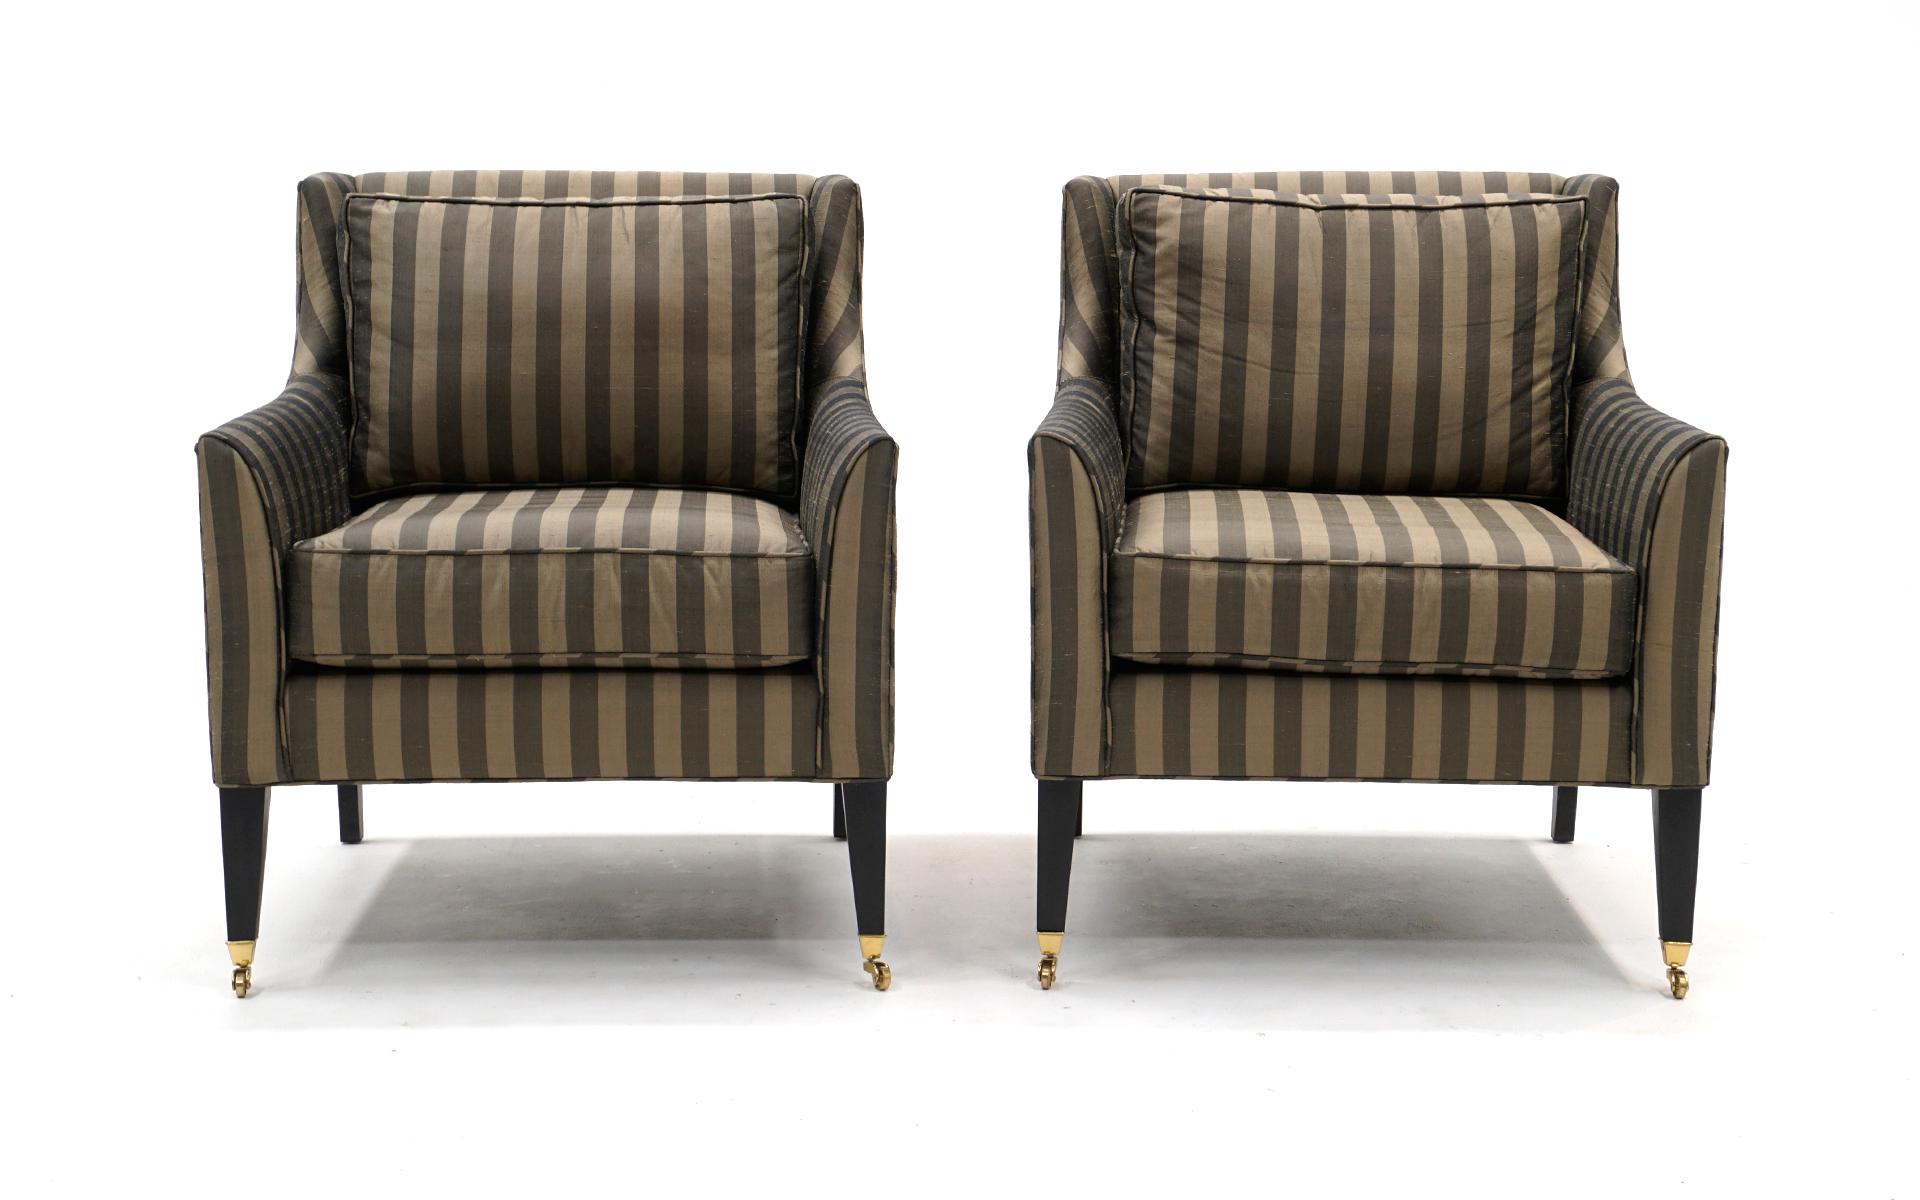 Ein Paar Lounge Chairs im Stil von Edward Wormley für Dunbar. Elegante gestreifte Polsterung in Hellbraun und Grau. Bequem und sofort einsatzbereit.